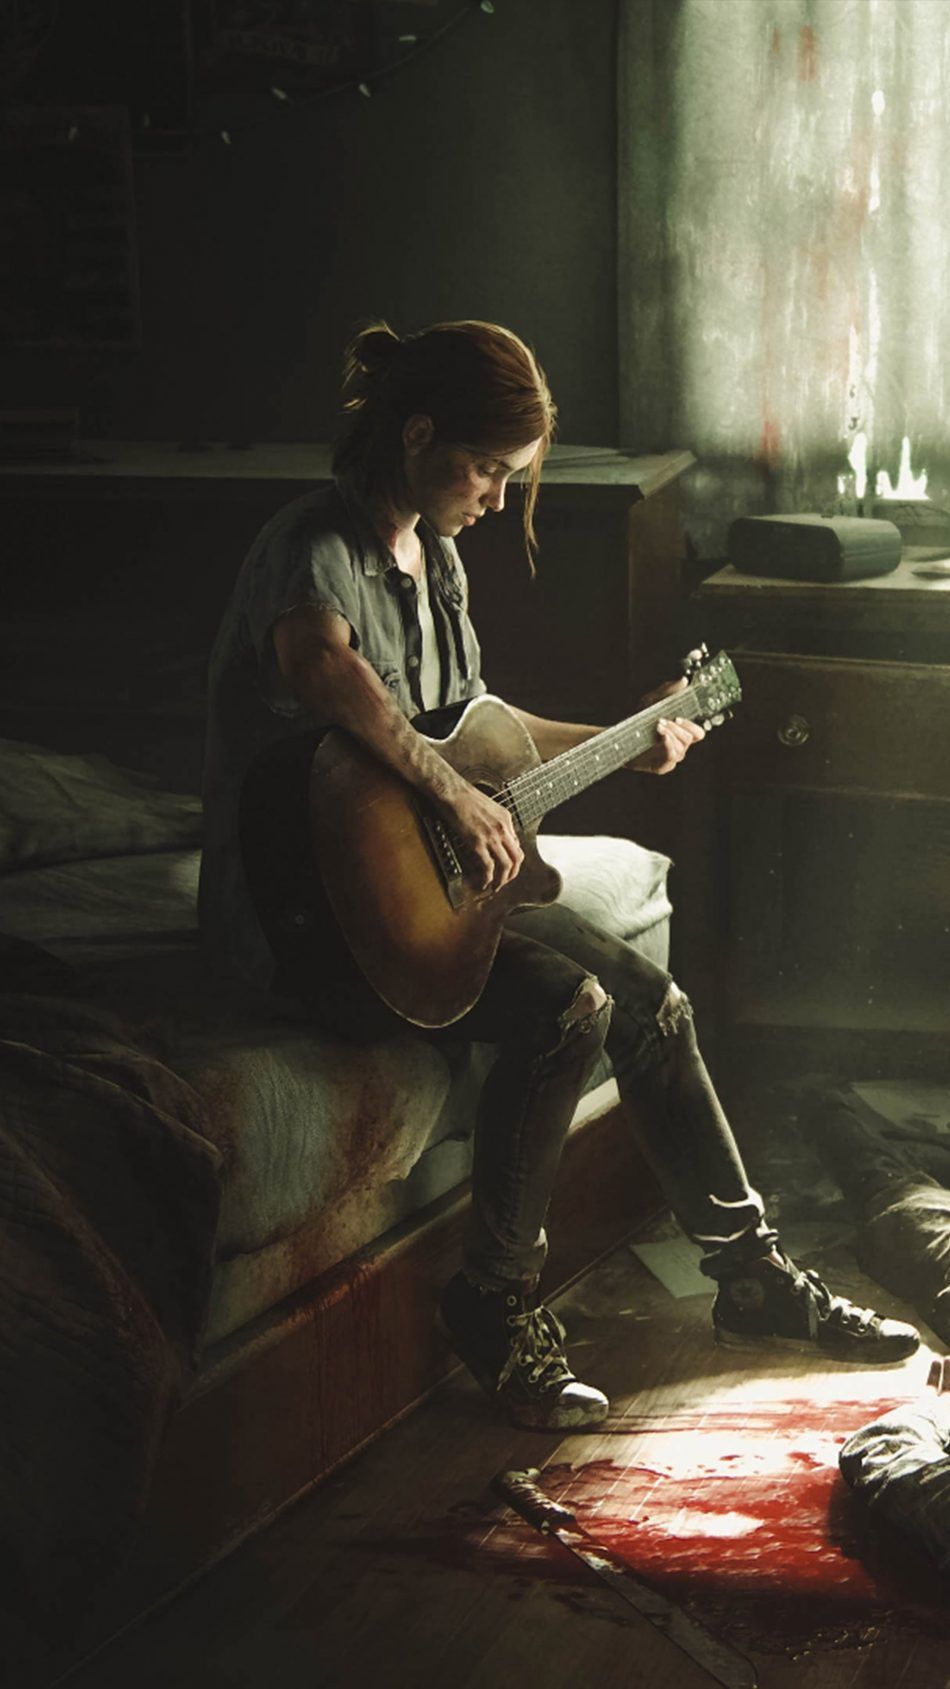 Ellie The Last of Us II. The last of us Wallpaper, Last of us